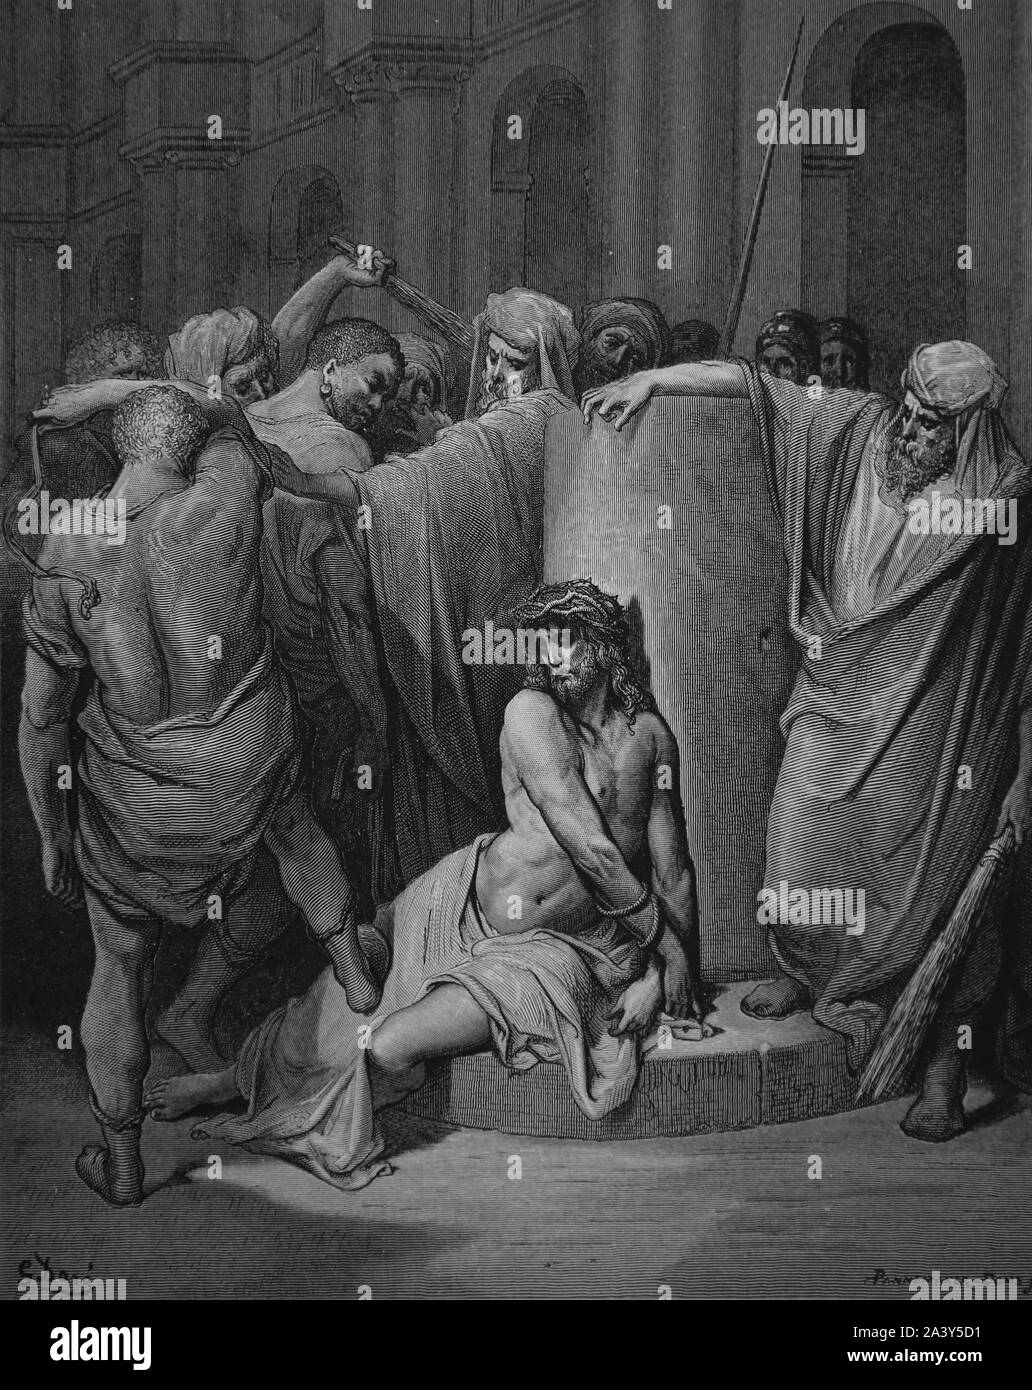 Leidenschaft. Jesus Geißeln. Johannes 19:1. Gravur. Bibel Illustrationen von Gustave Dore. 19. Später Färbung. Stockfoto